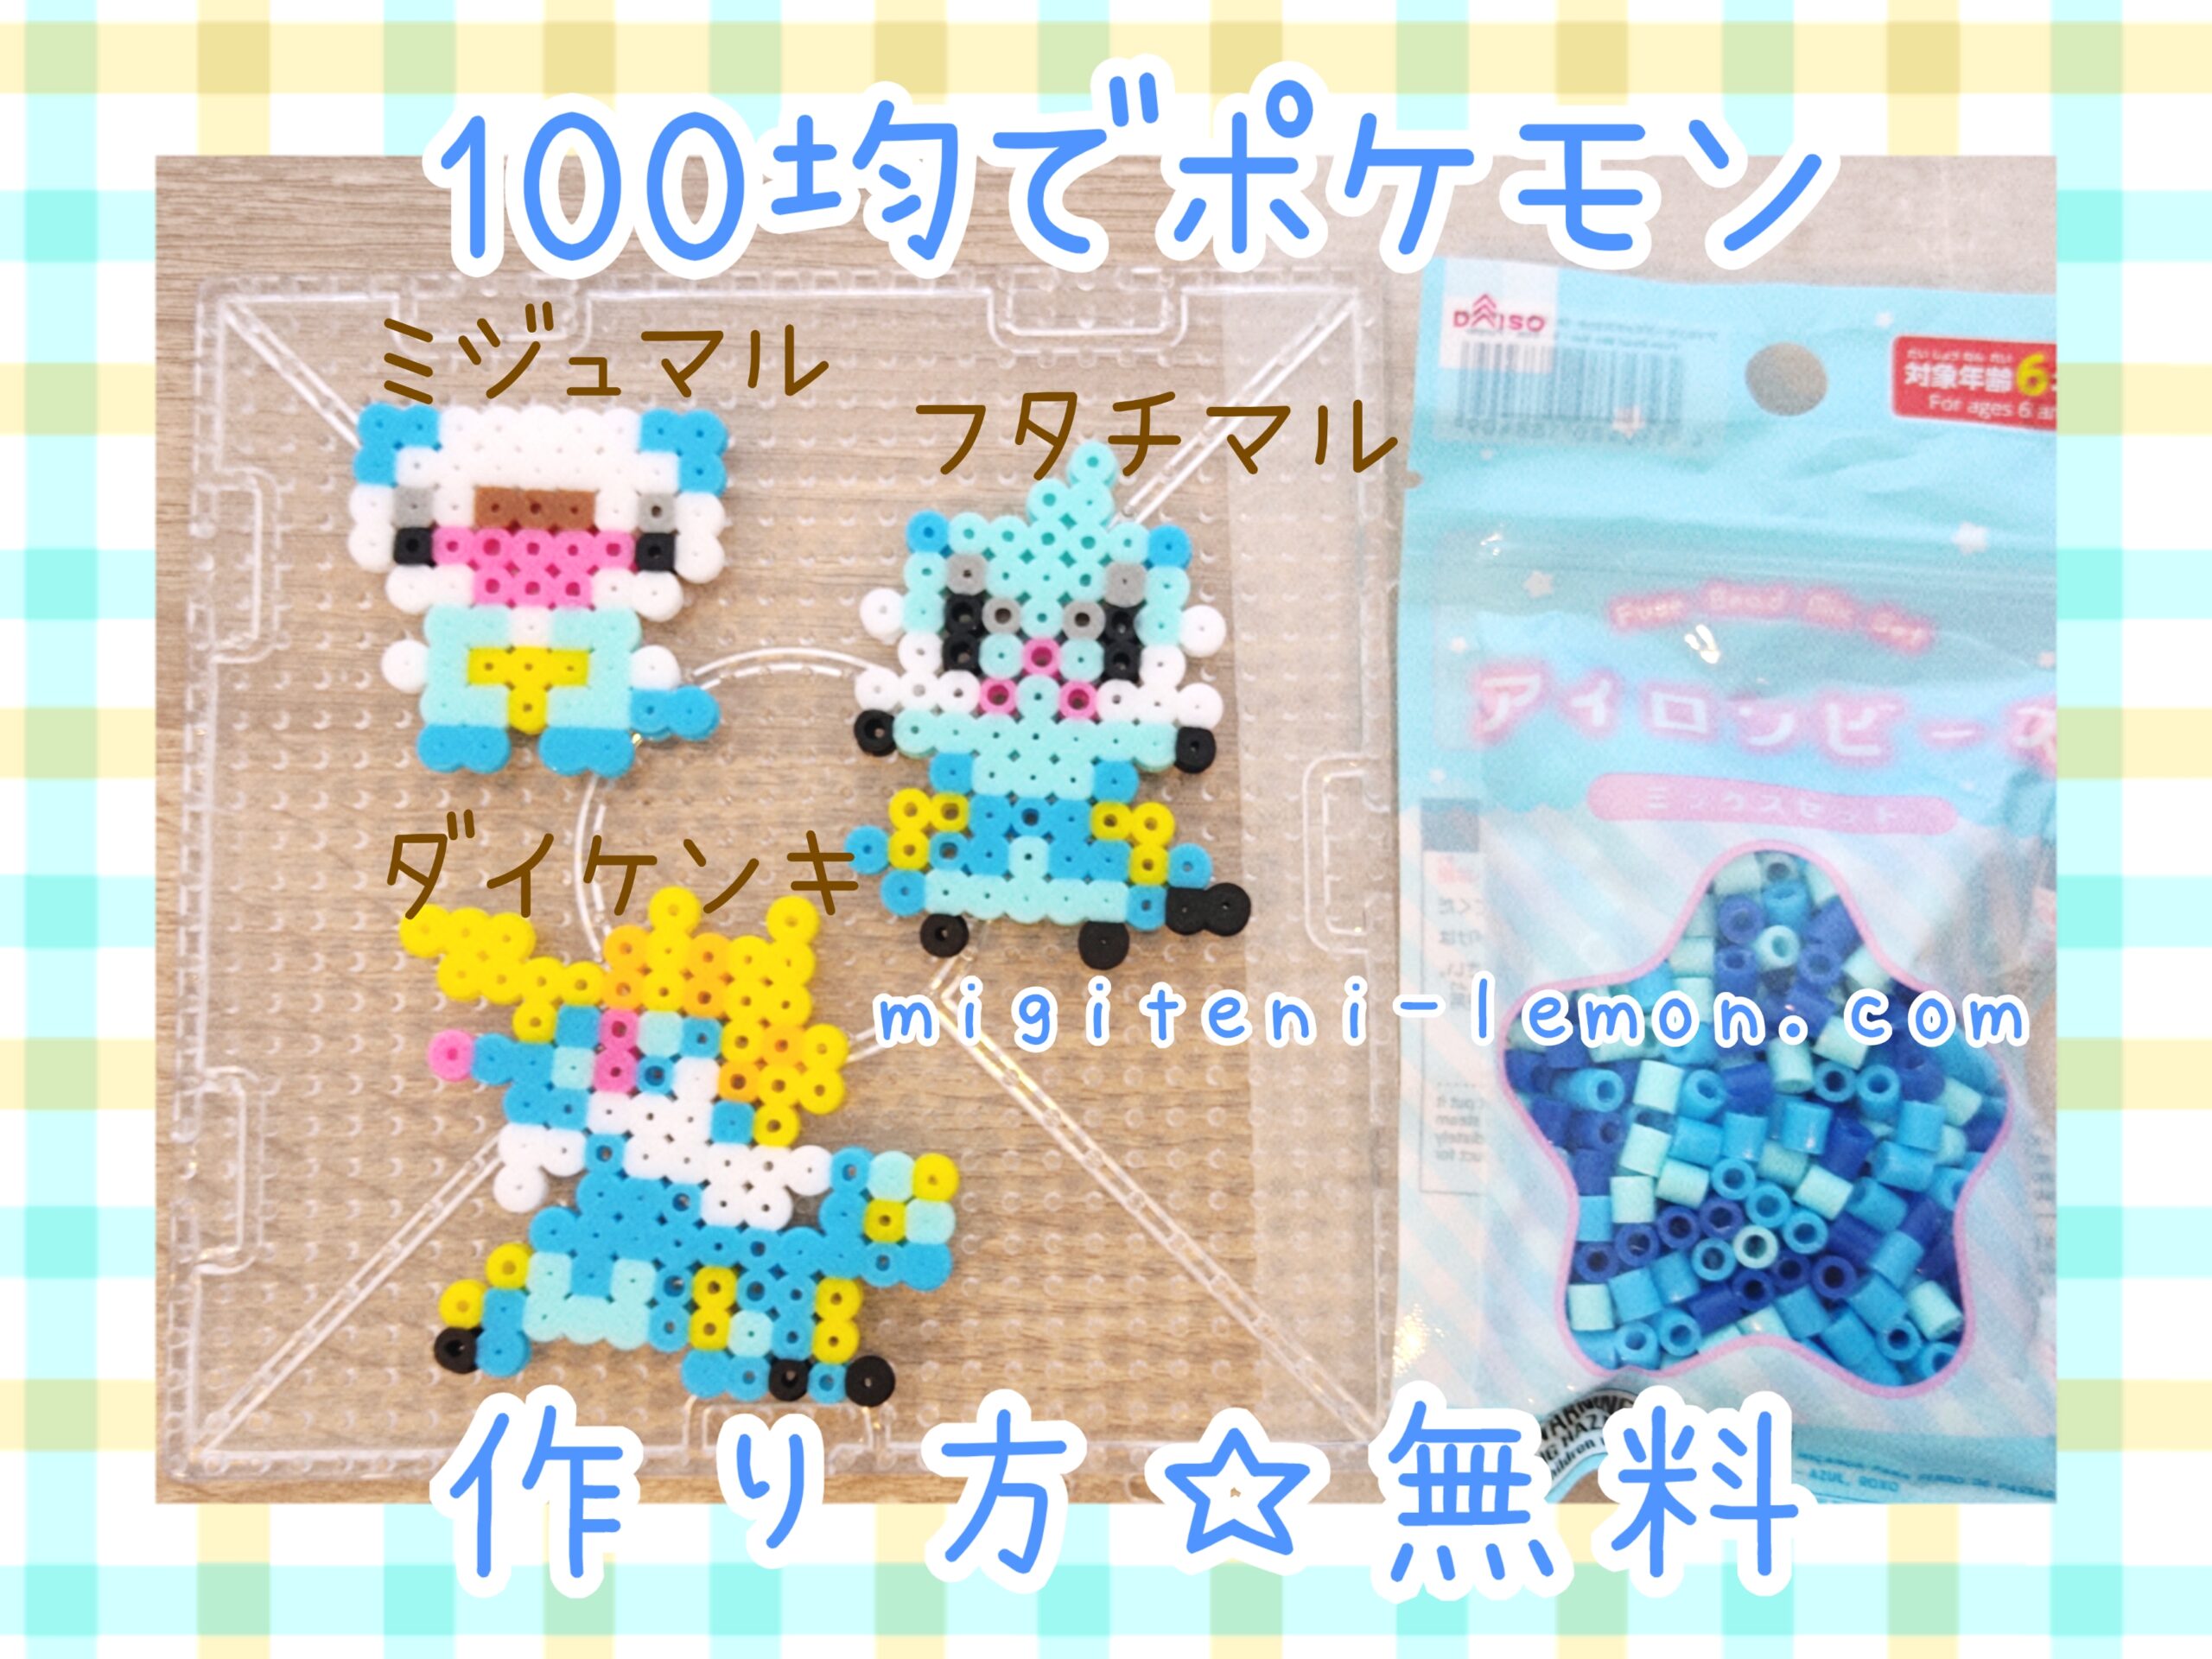 mijumaru-oshawott-futachimaru-dewott-daikenki-samurott-pokemon-beads-zuan-free